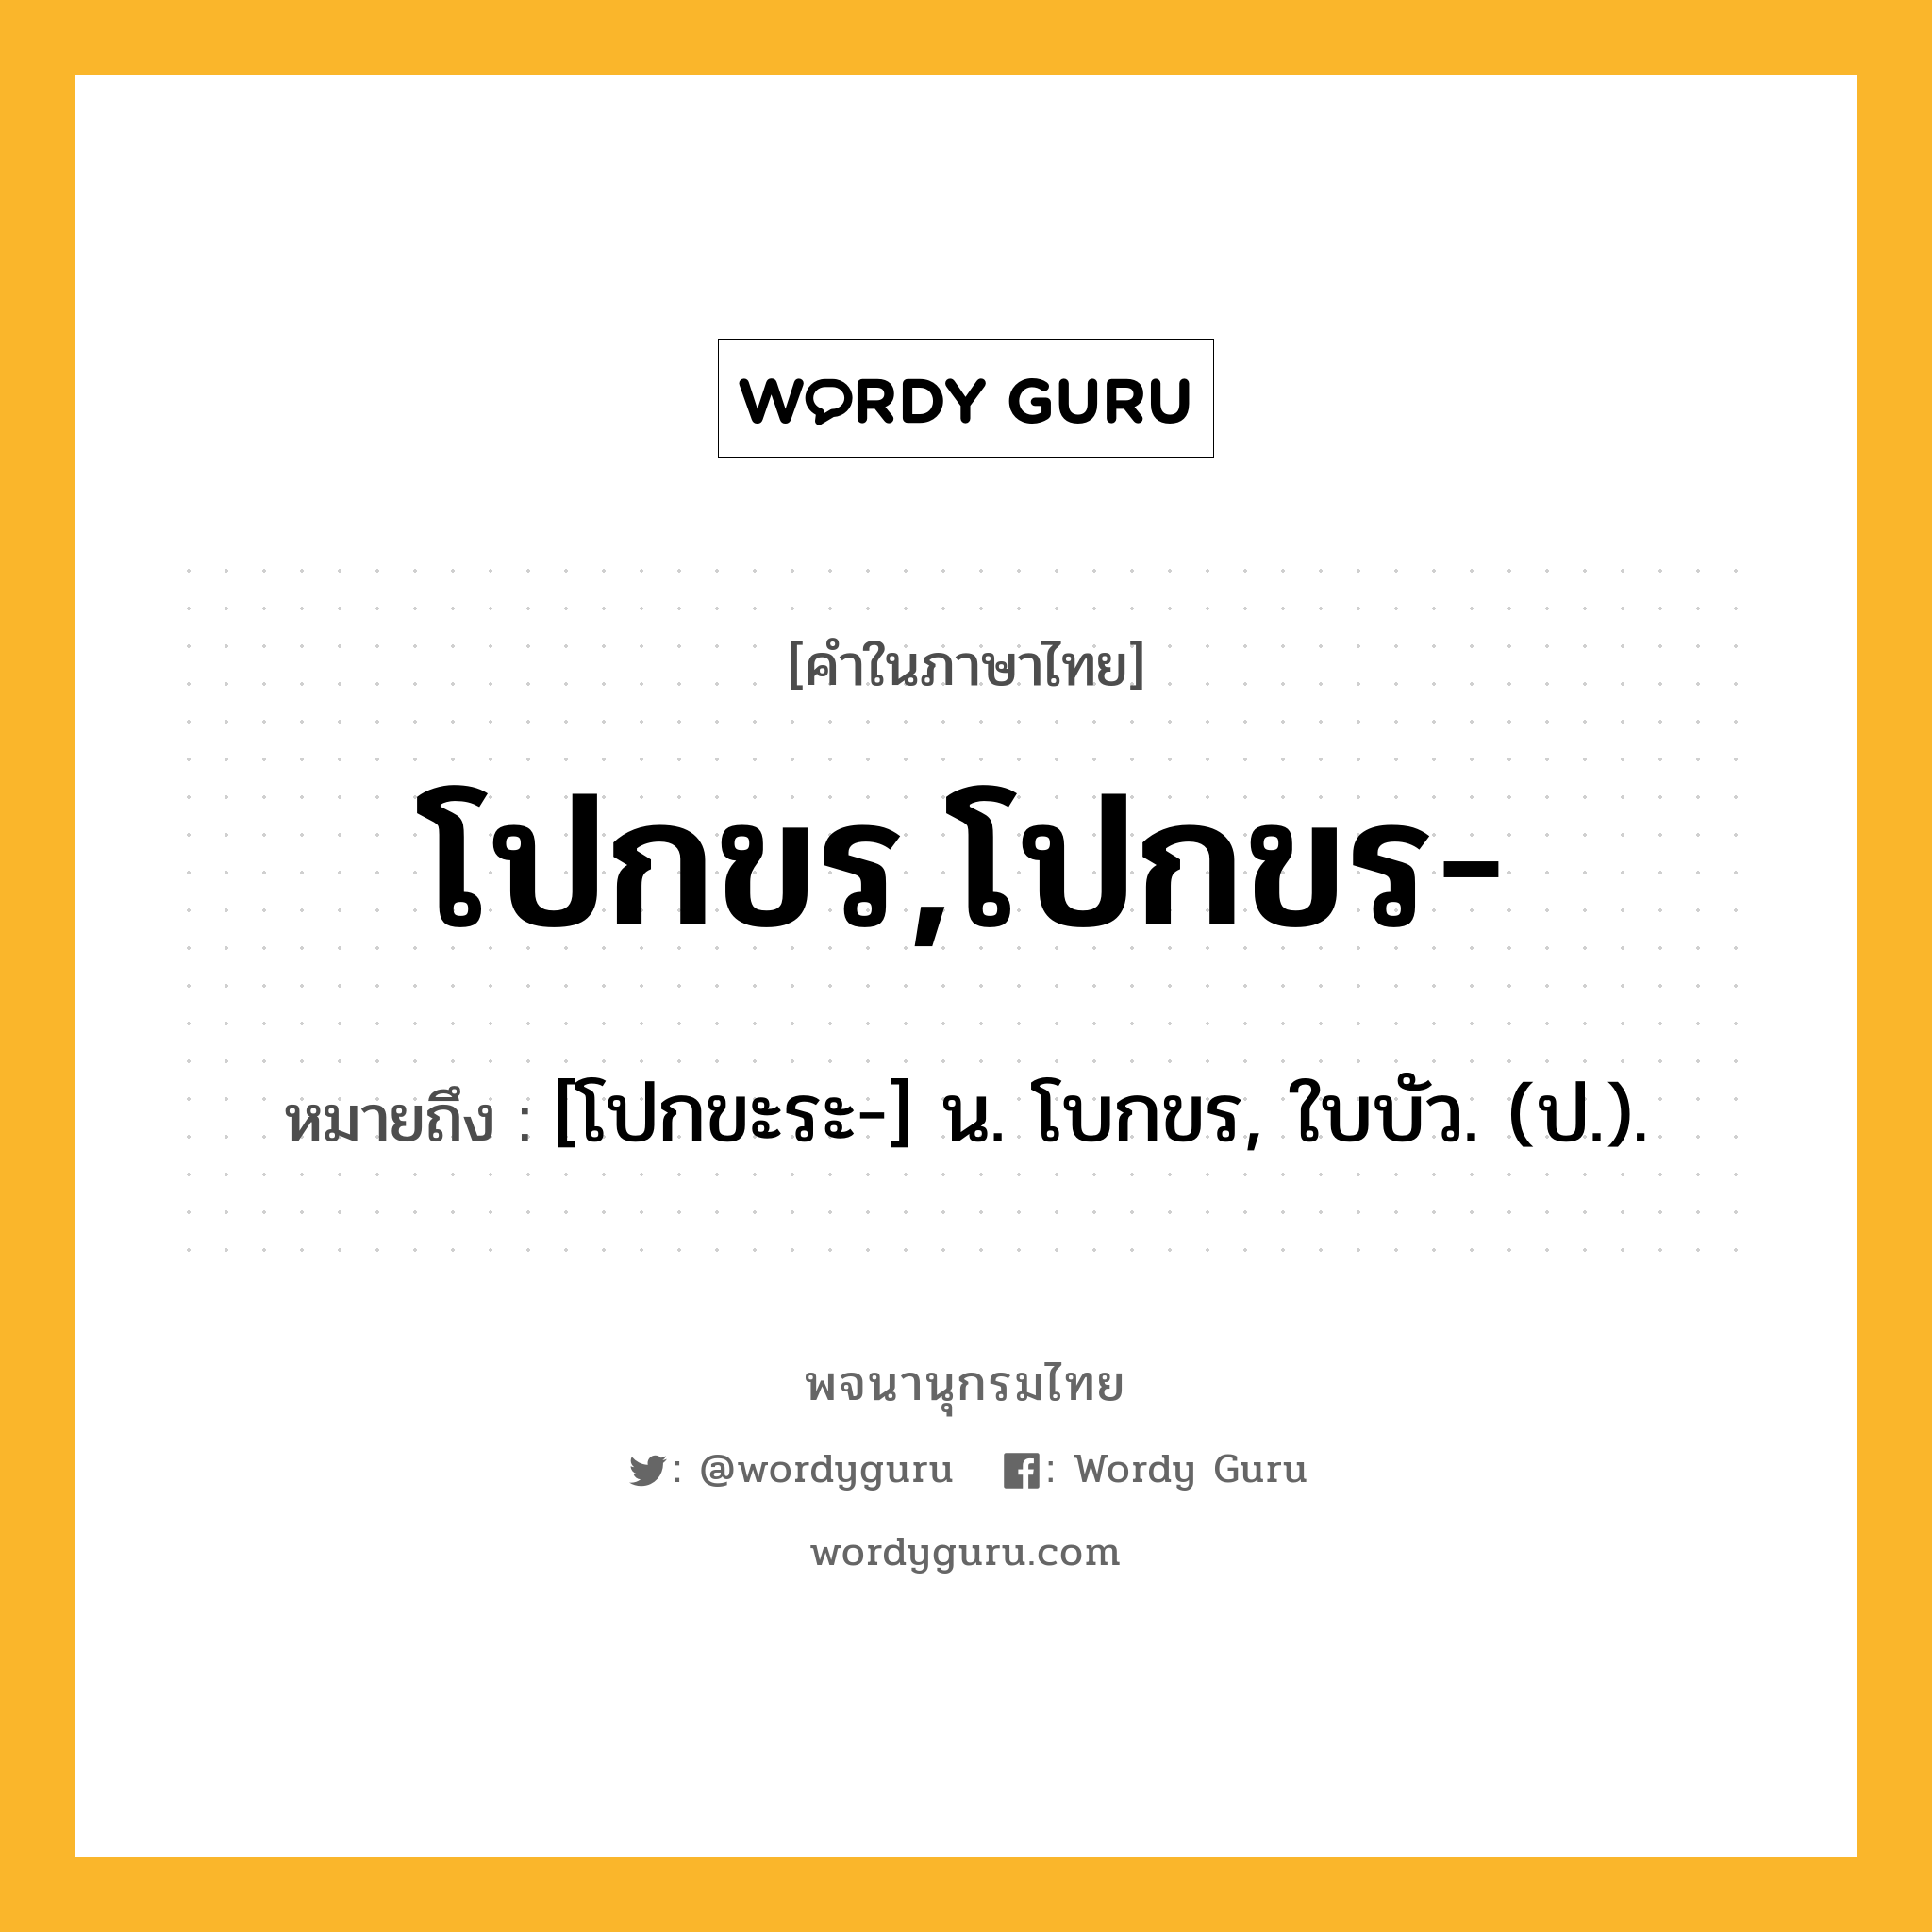 โปกขร,โปกขร- หมายถึงอะไร?, คำในภาษาไทย โปกขร,โปกขร- หมายถึง [โปกขะระ-] น. โบกขร, ใบบัว. (ป.).